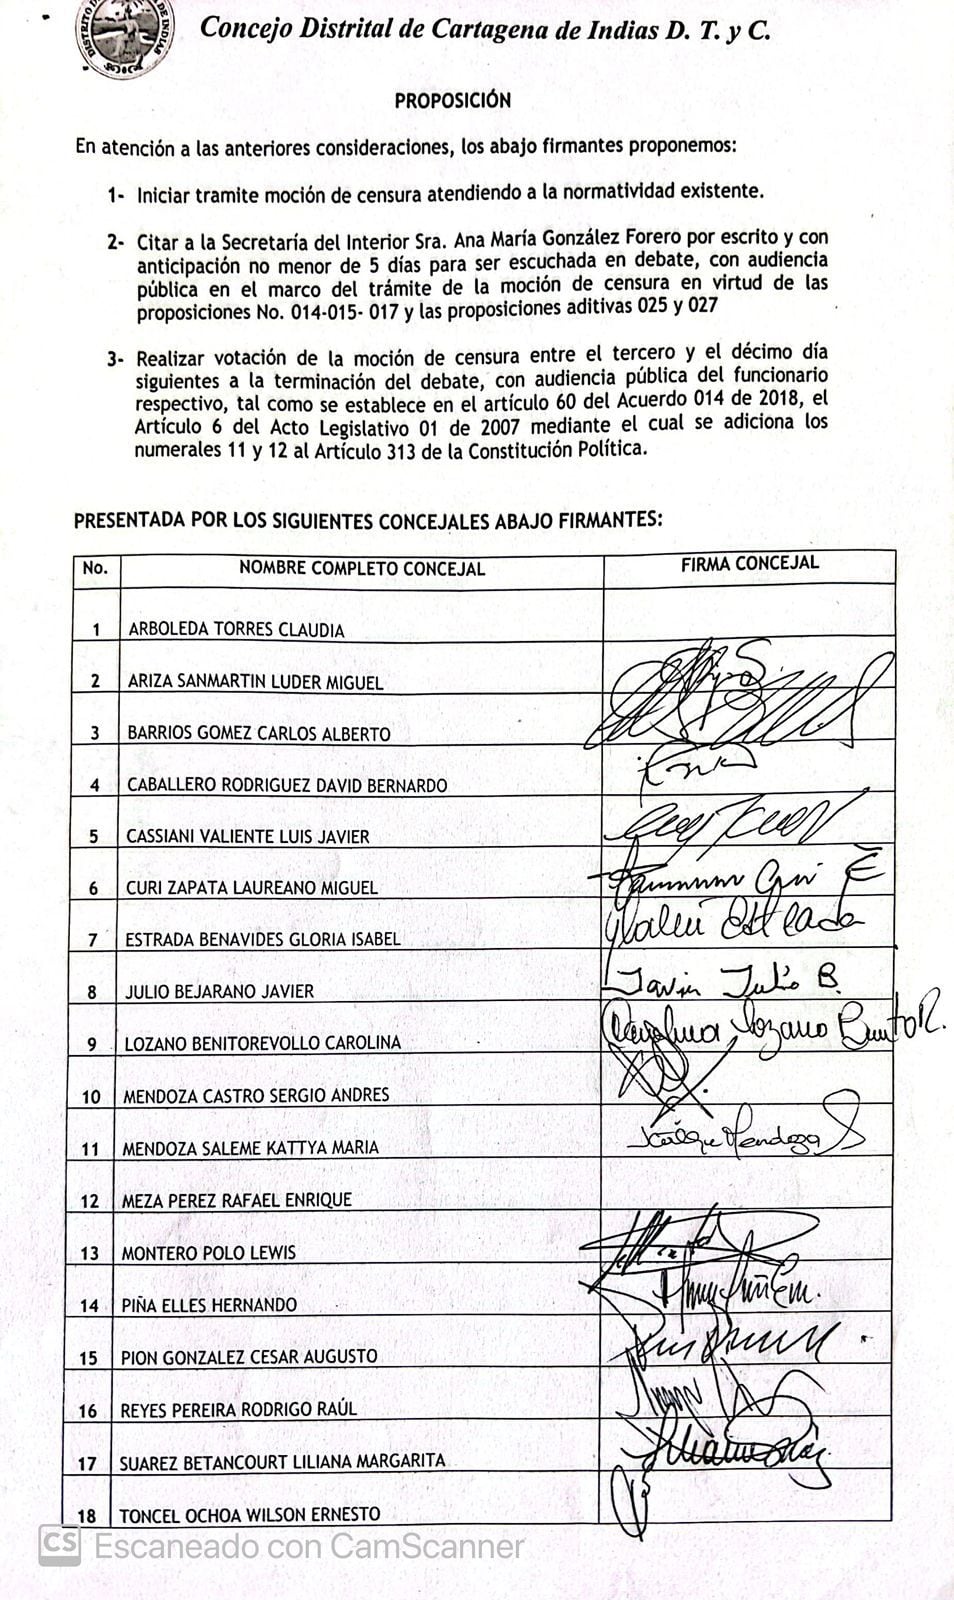 Documento firmado por 16 de los 18 participantes del debate